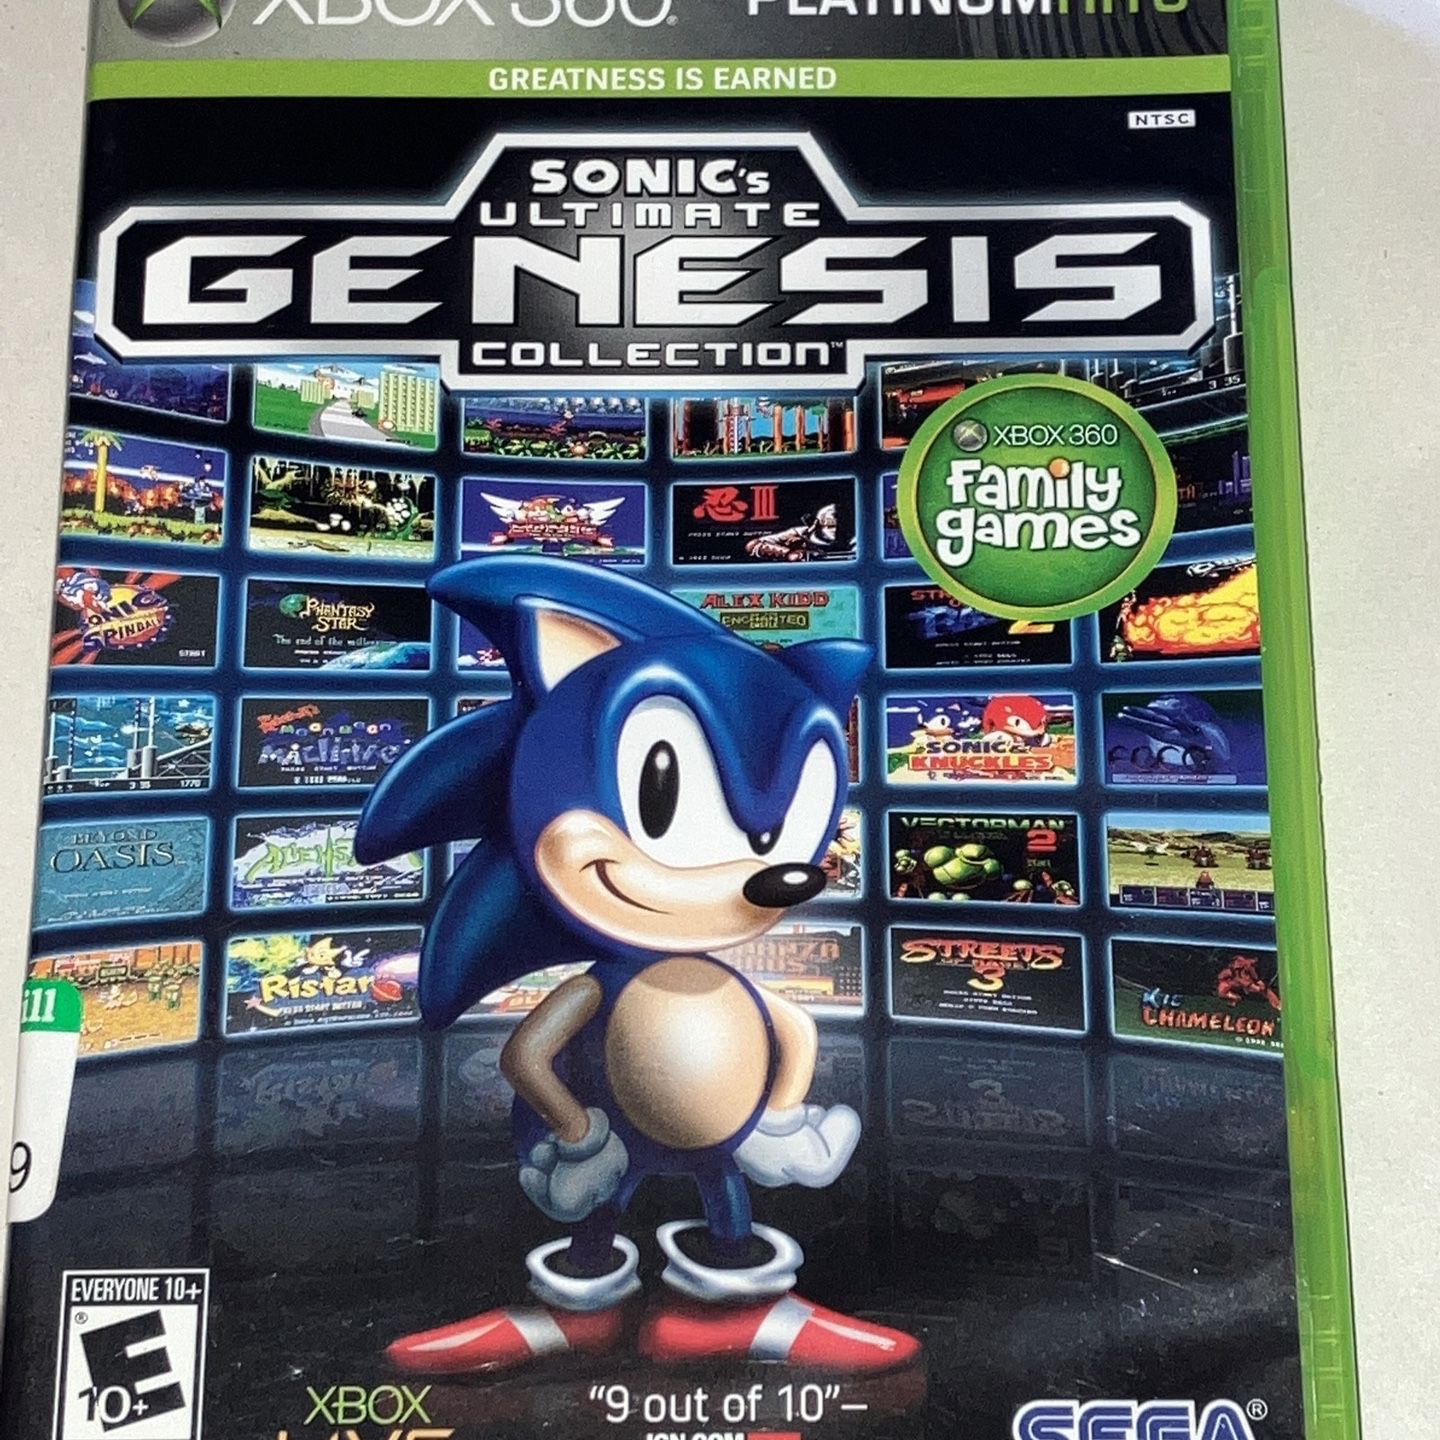 Jogo Sonic Generations Xbox 360 Ntsc Em Dvd Original - Desconto no Preço